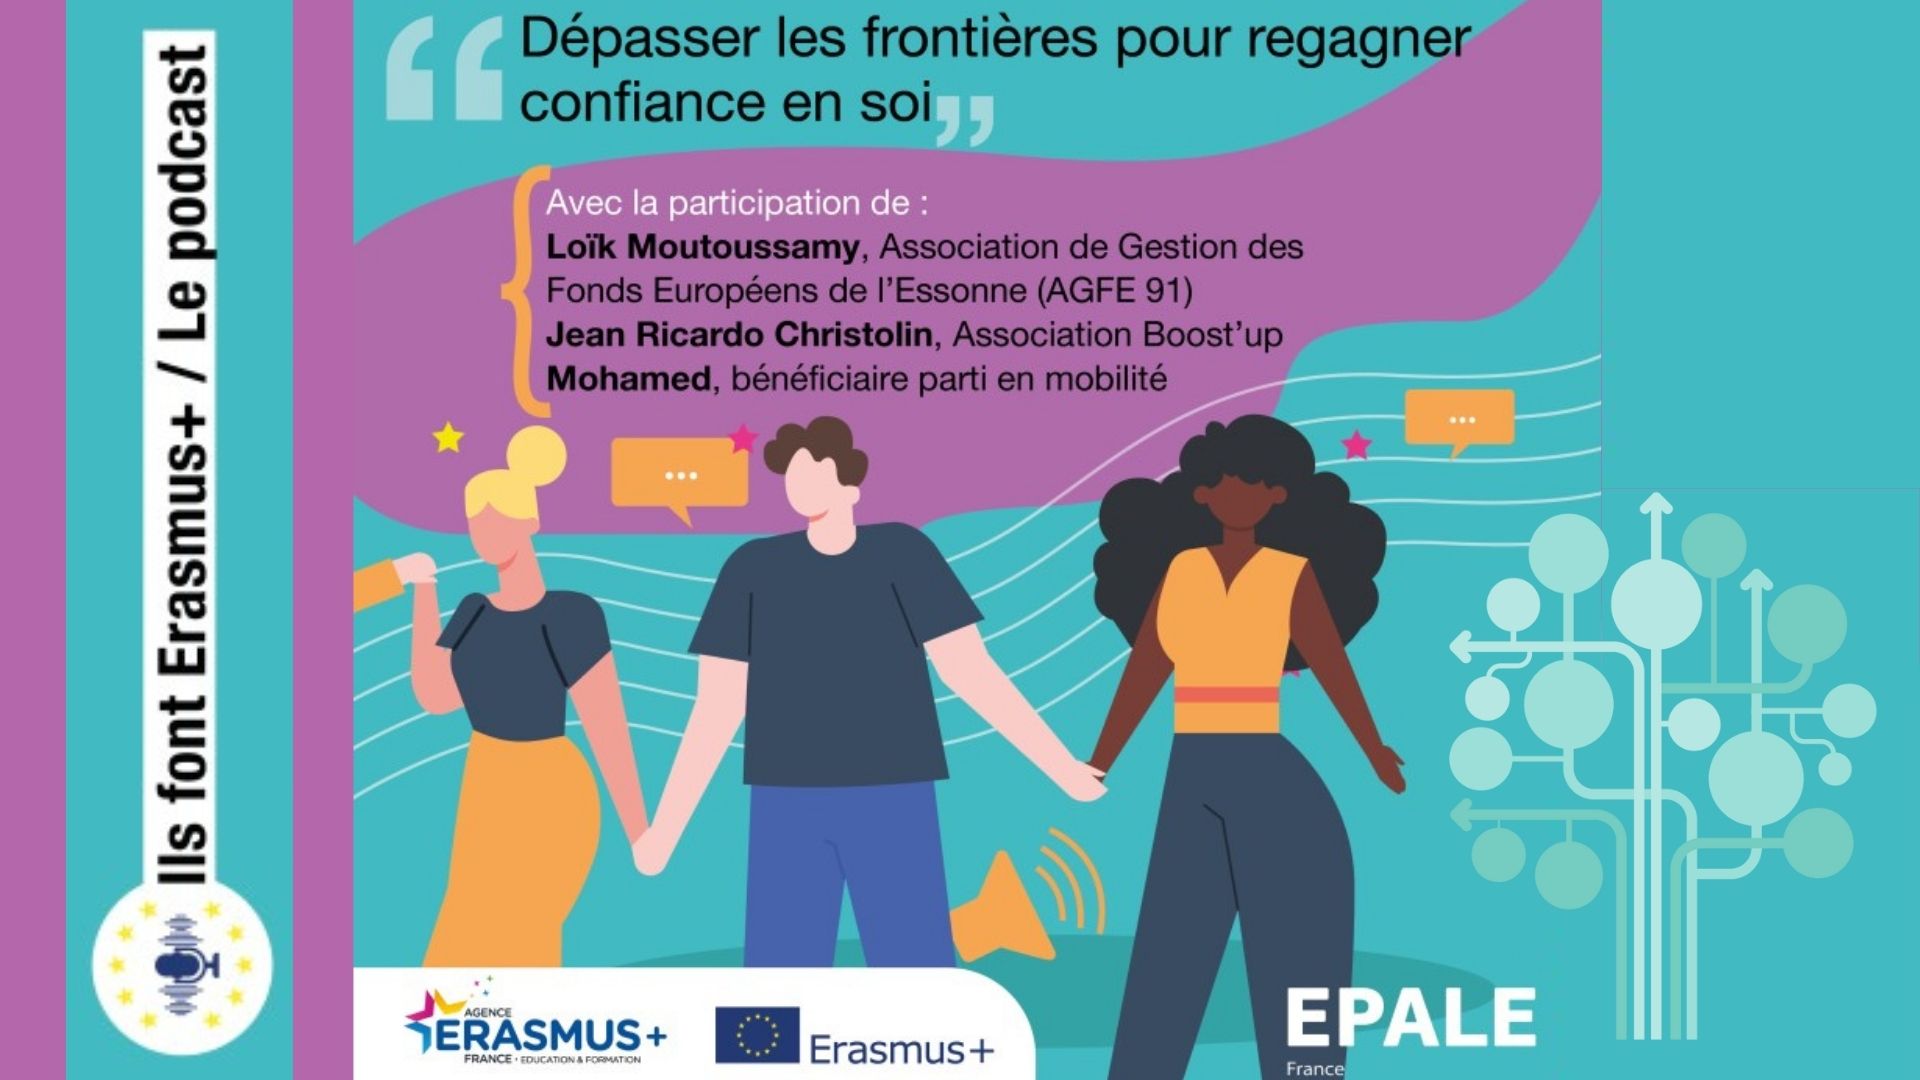 Podcast Epale - Neets - Erasmus +: changer d’environnement pour regagner confiance en soi